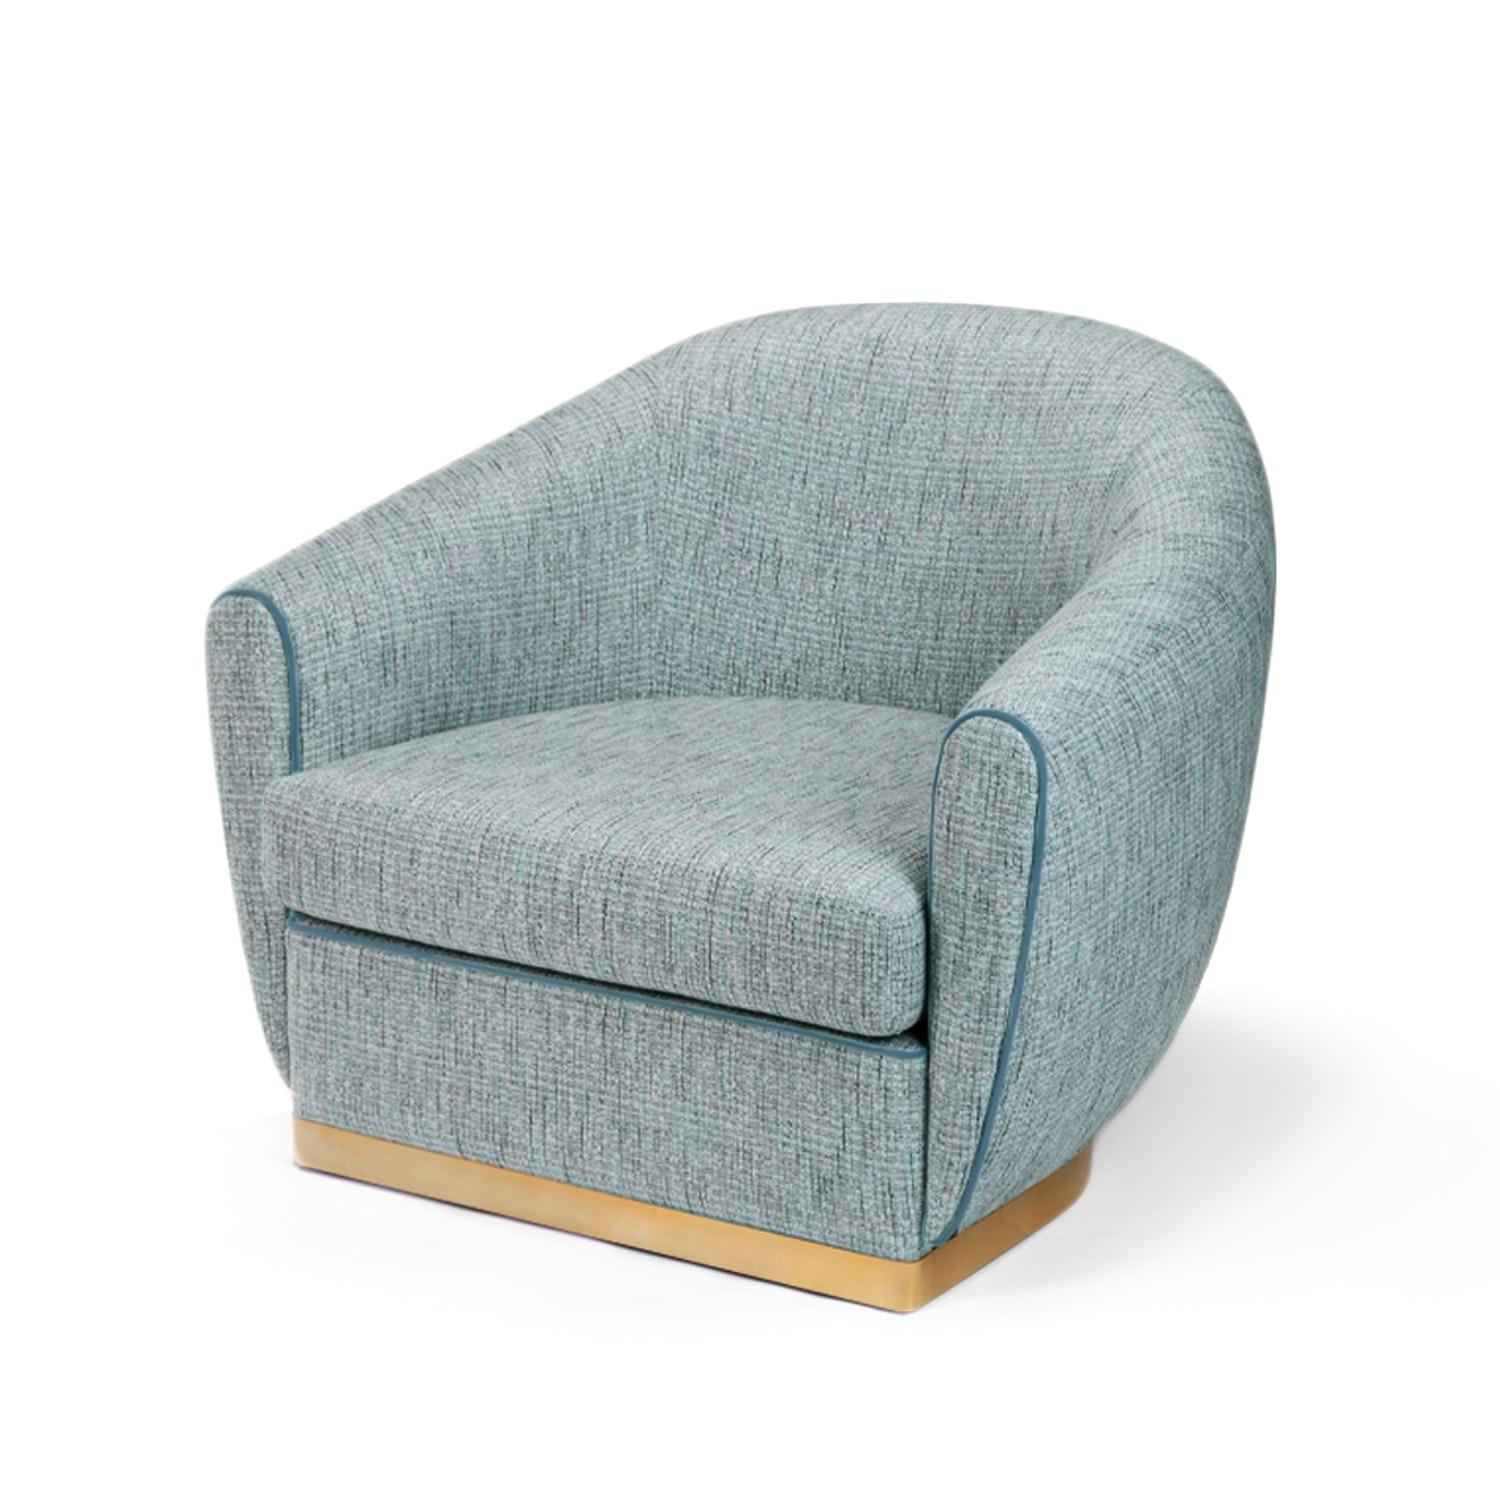 Der stilvolle und elegante Sessel Grace ist durch seine perfekte Verarbeitung äußerst bequem. Mit seinen glatten Kanten hat Grace definitiv ein vertrautes Retro-Gefühl. Eine perfekte Kombination aus hochkomfortabler und perfekt zugeschnittener